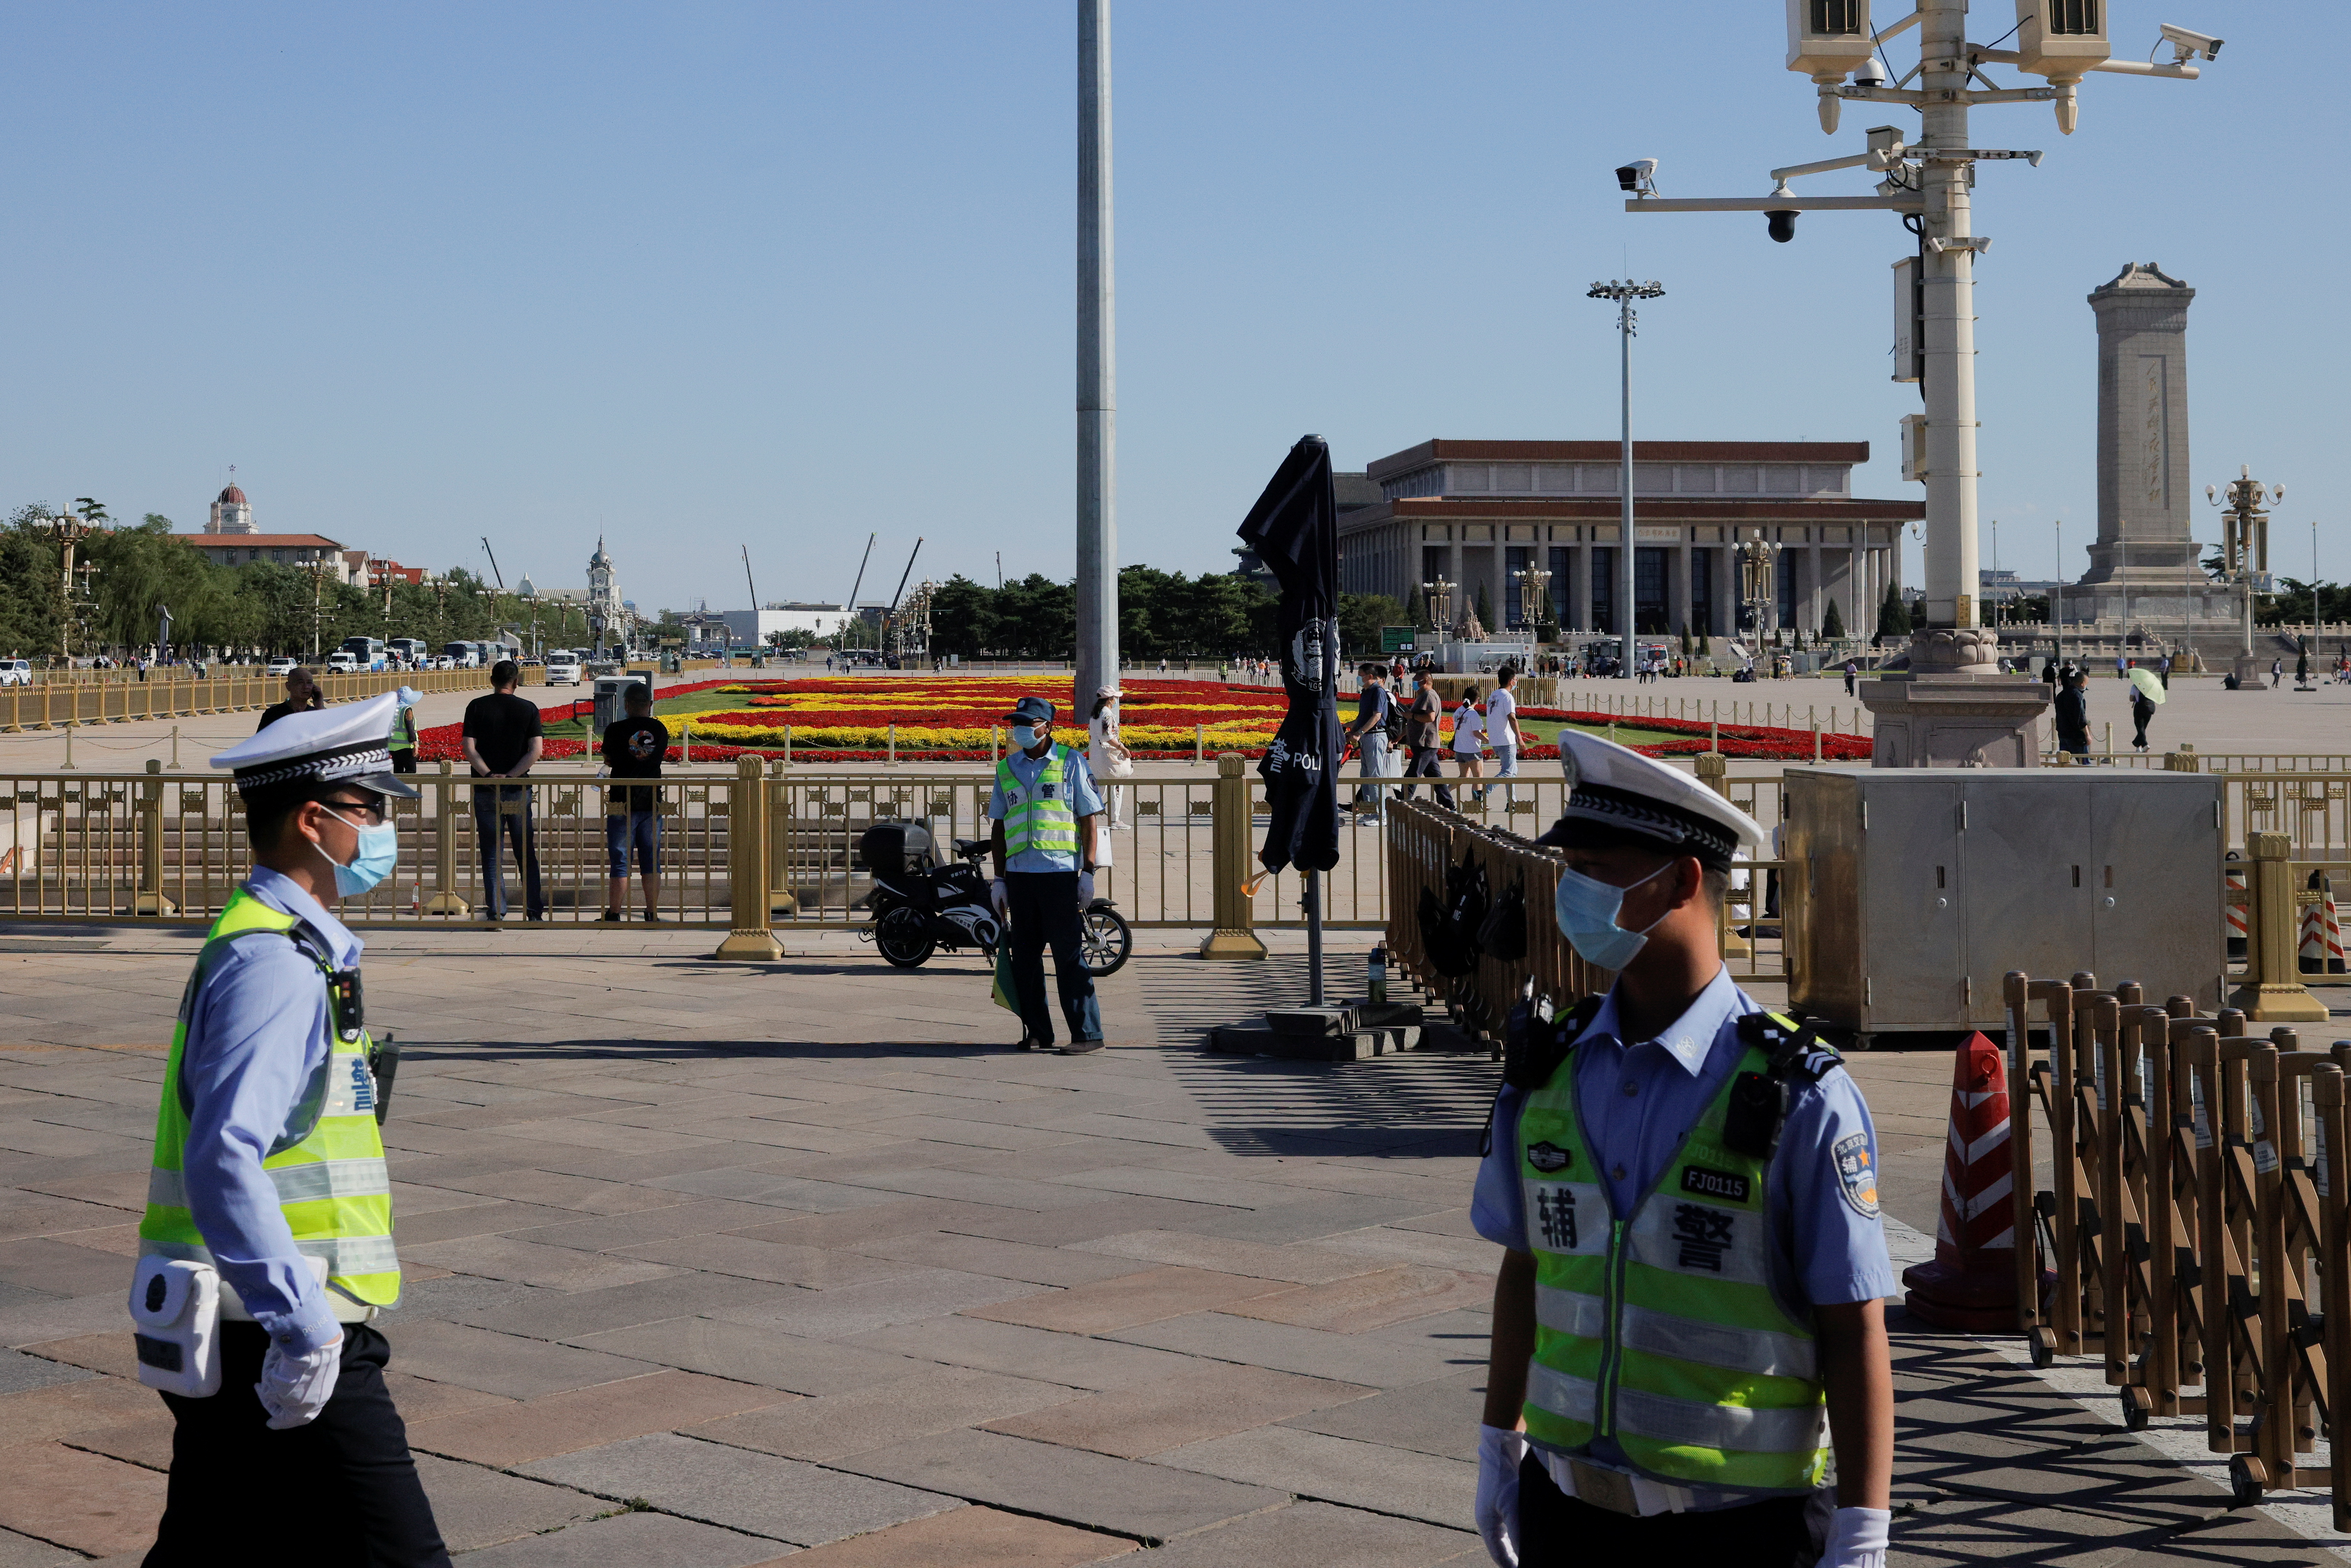 Police officers patrol in Tiananmen Square in Beijing